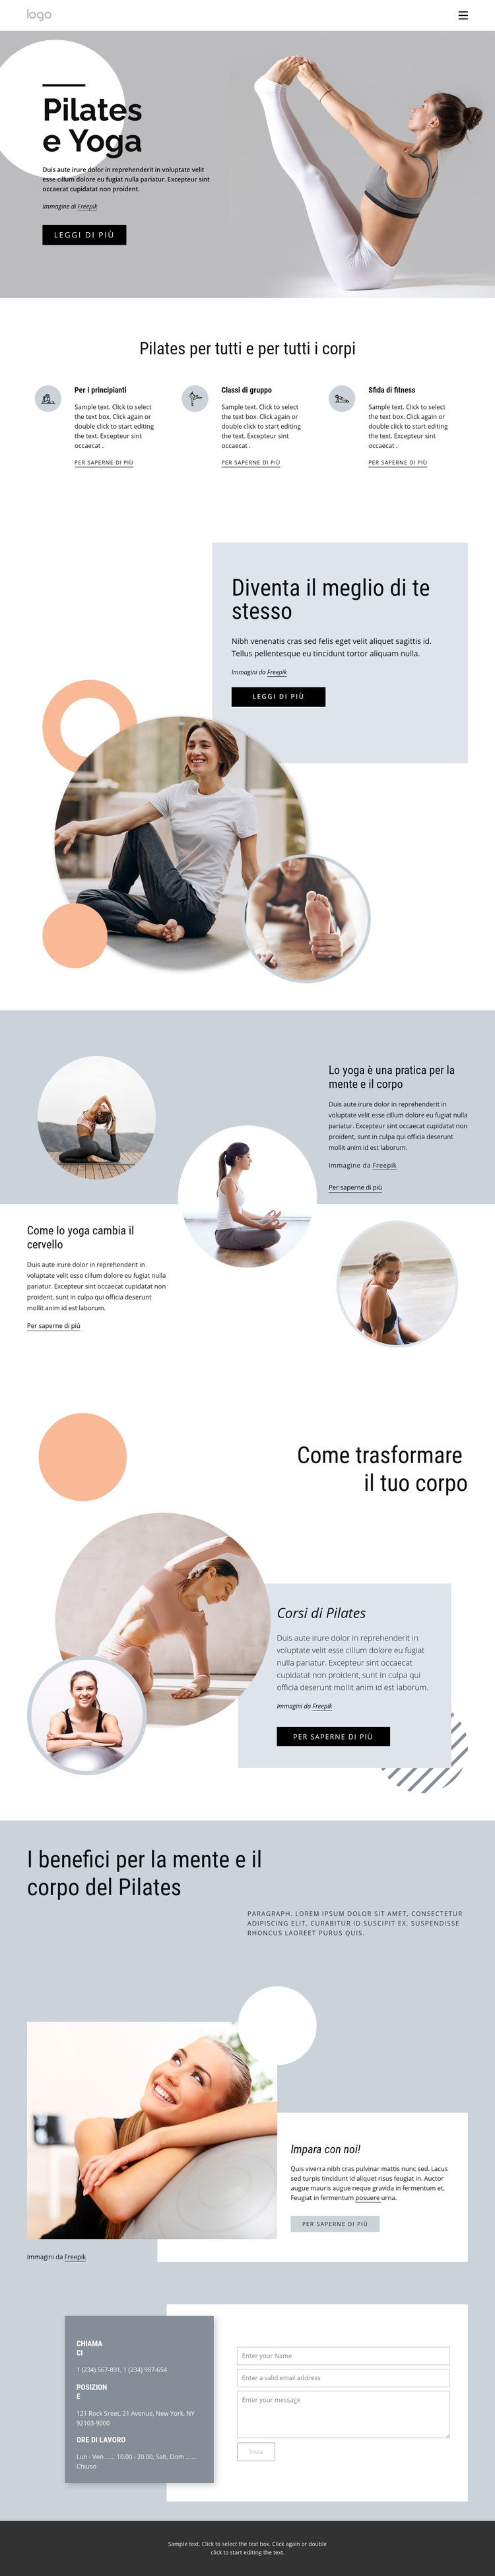 Centro pilates e yoga Tema WordPress